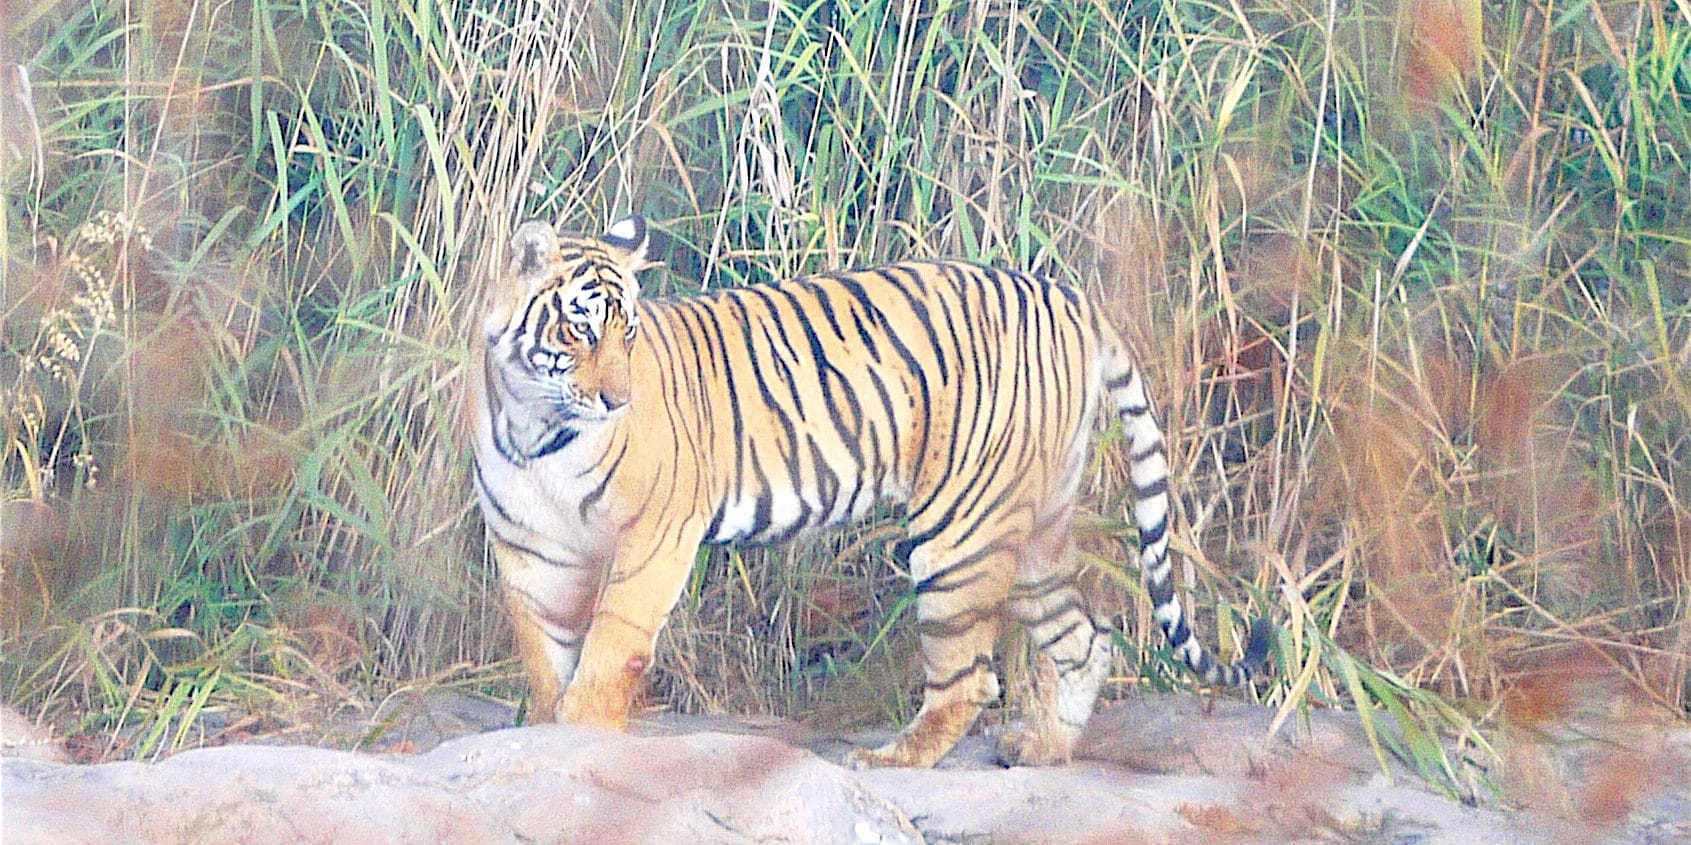 Tiger on Safari in Asia